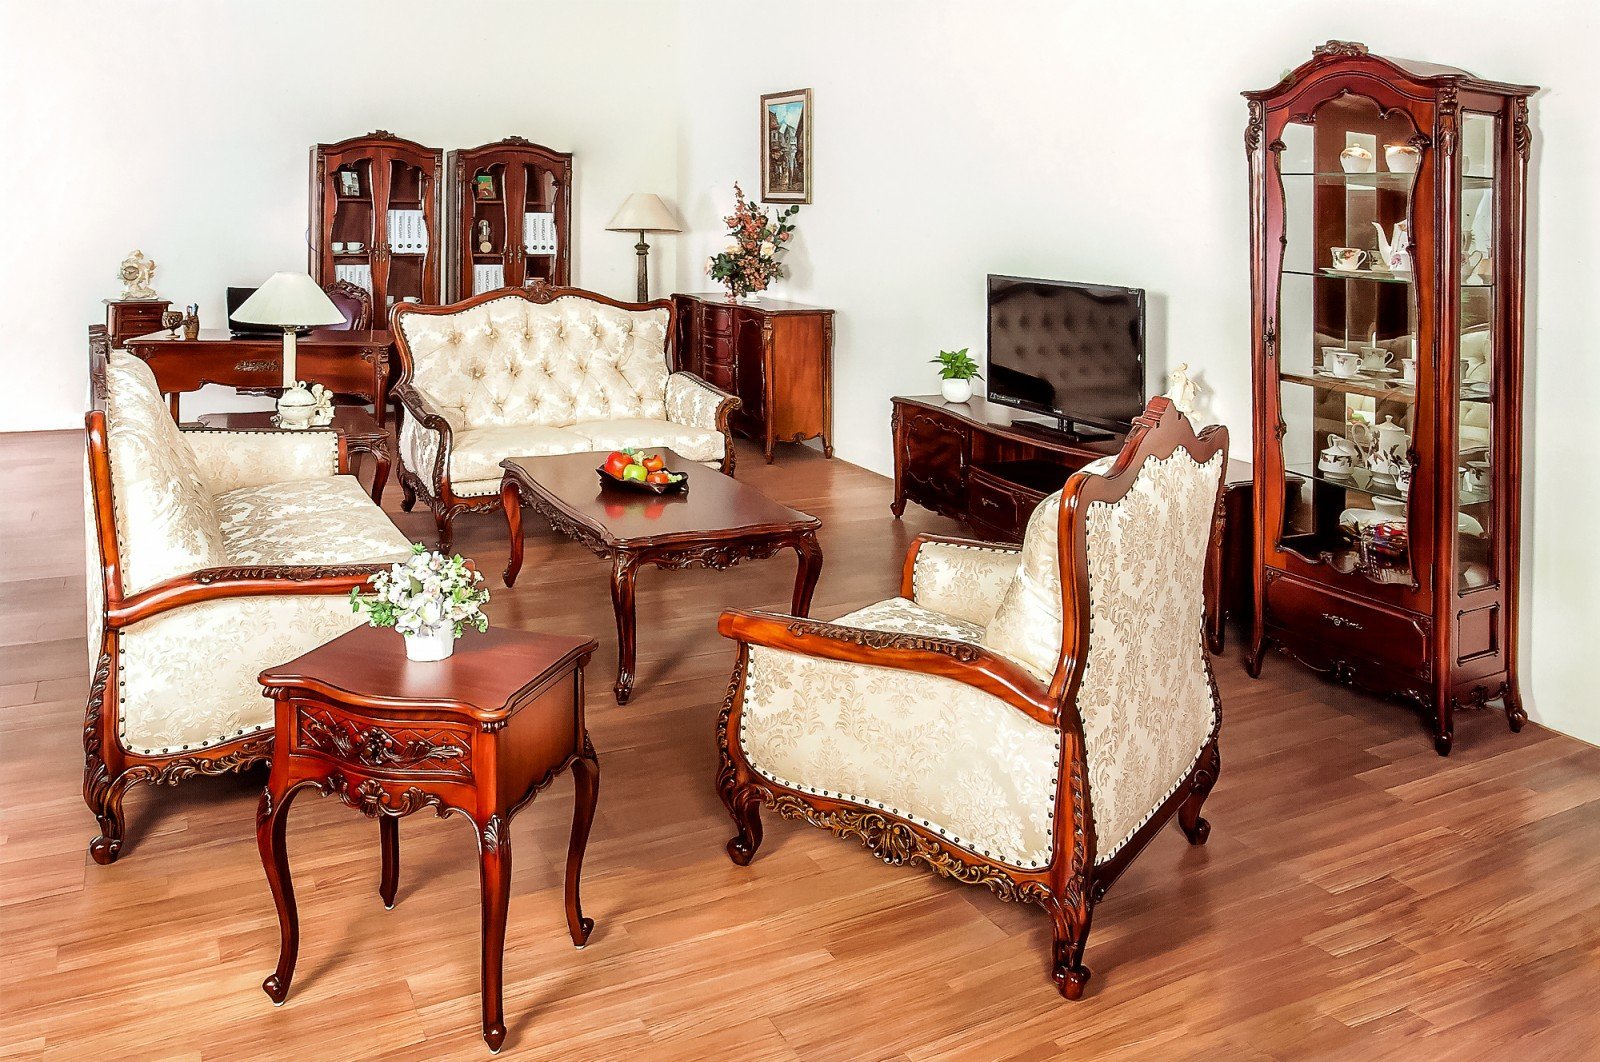 Малайзия мебель москва. Румынская мебель красное дерево. Румынская мебель Elysee Simex. Румынская мебель испанский Ренессанс. Мебель из красного дерева.